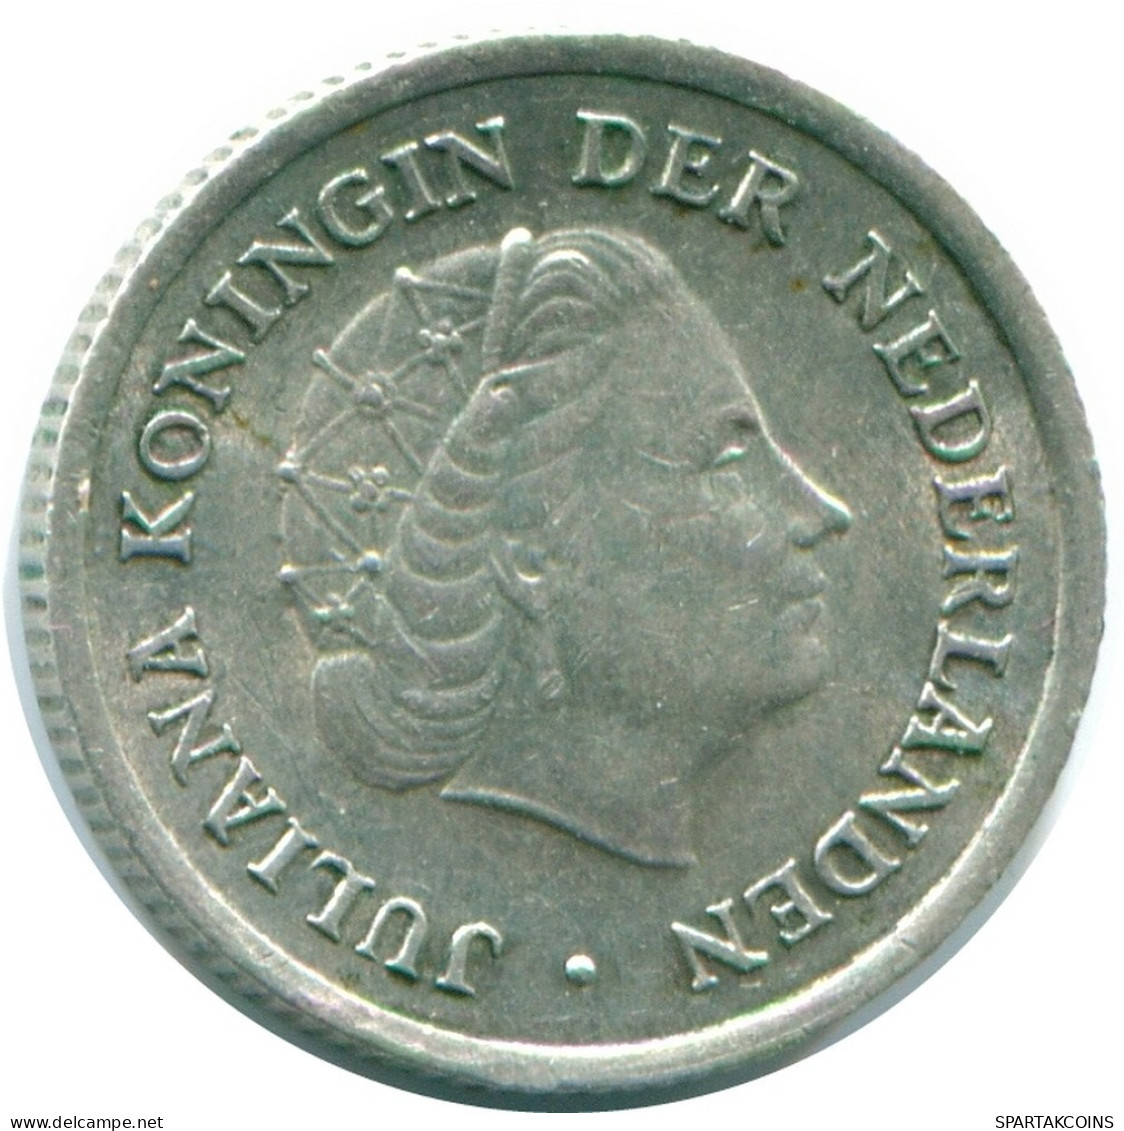 1/10 GULDEN 1959 NIEDERLÄNDISCHE ANTILLEN SILBER Koloniale Münze #NL12198.3.D.A - Niederländische Antillen